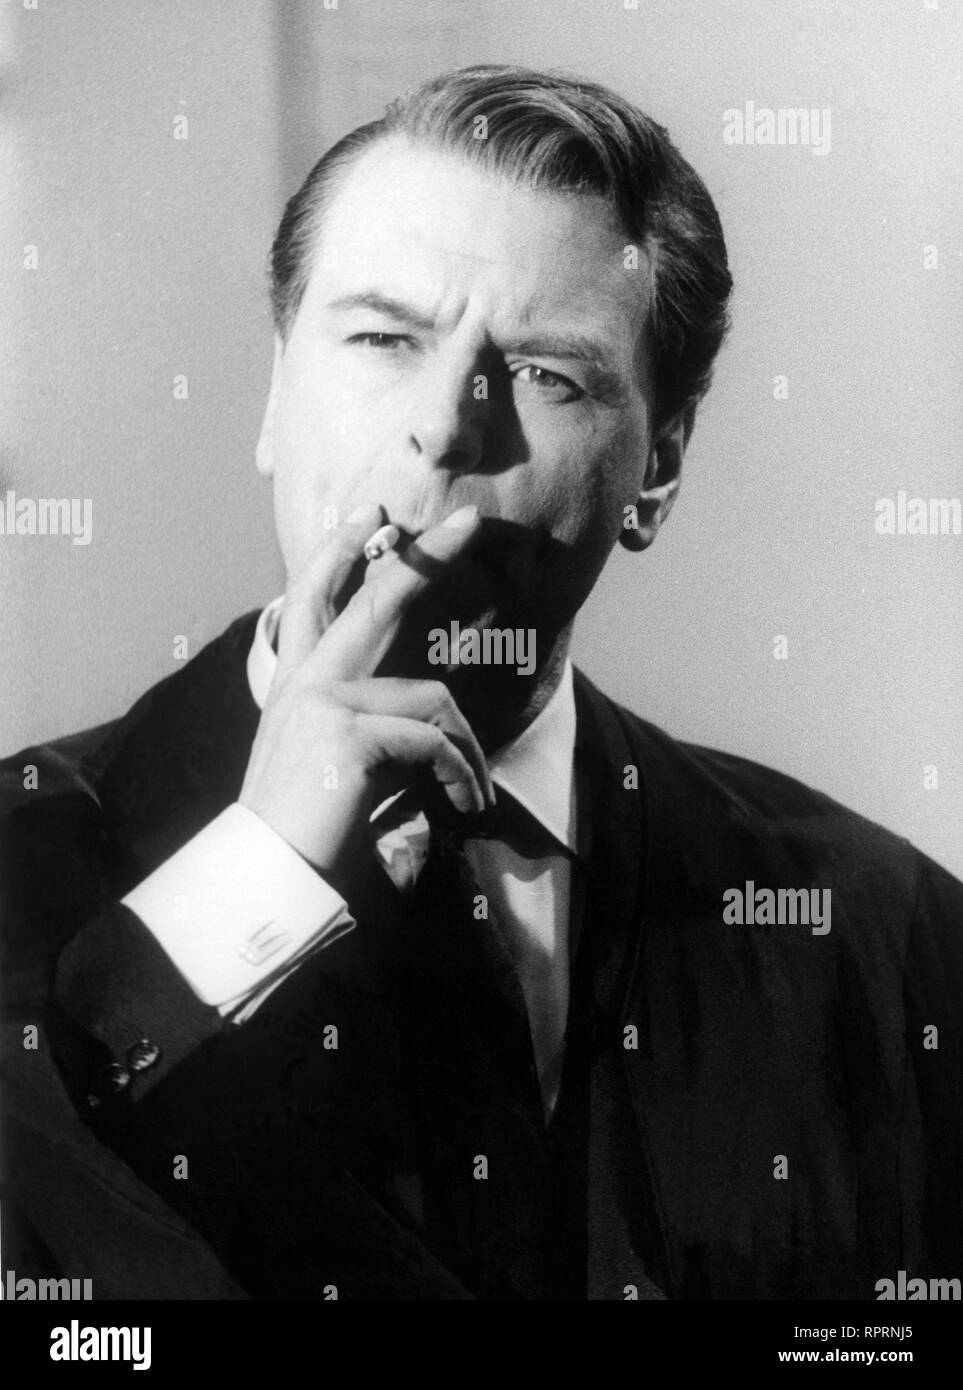 O. W. FISCHER mit Zigarette, Portaitaufnahme aus den 60er Jahren. Stock Photo